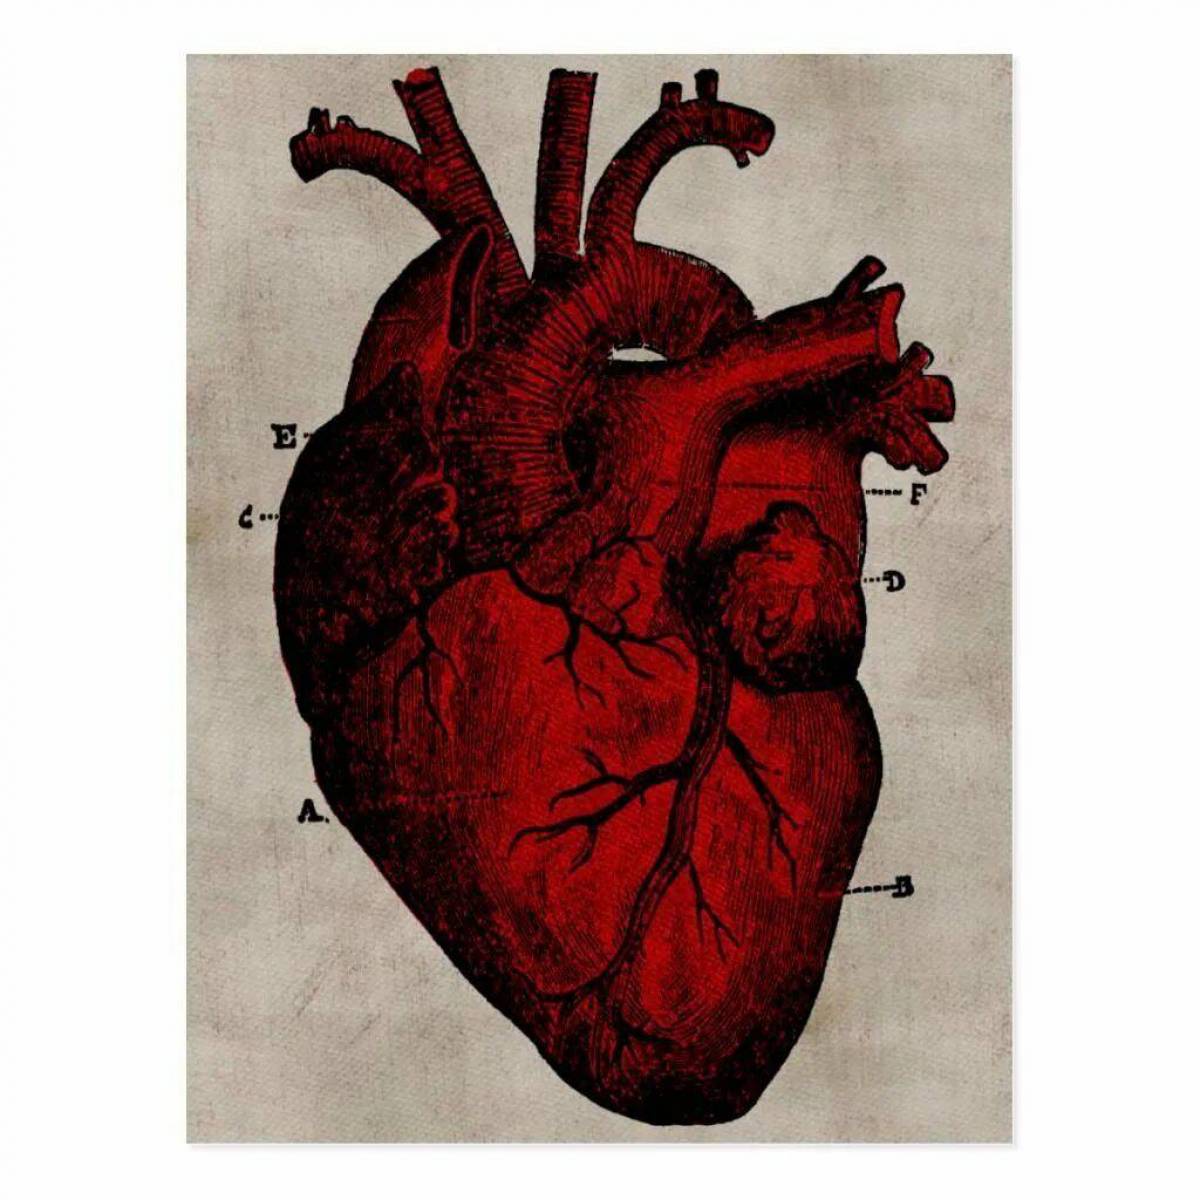 Найти живое сердце. Сердце. Анатомическое сердце человека.